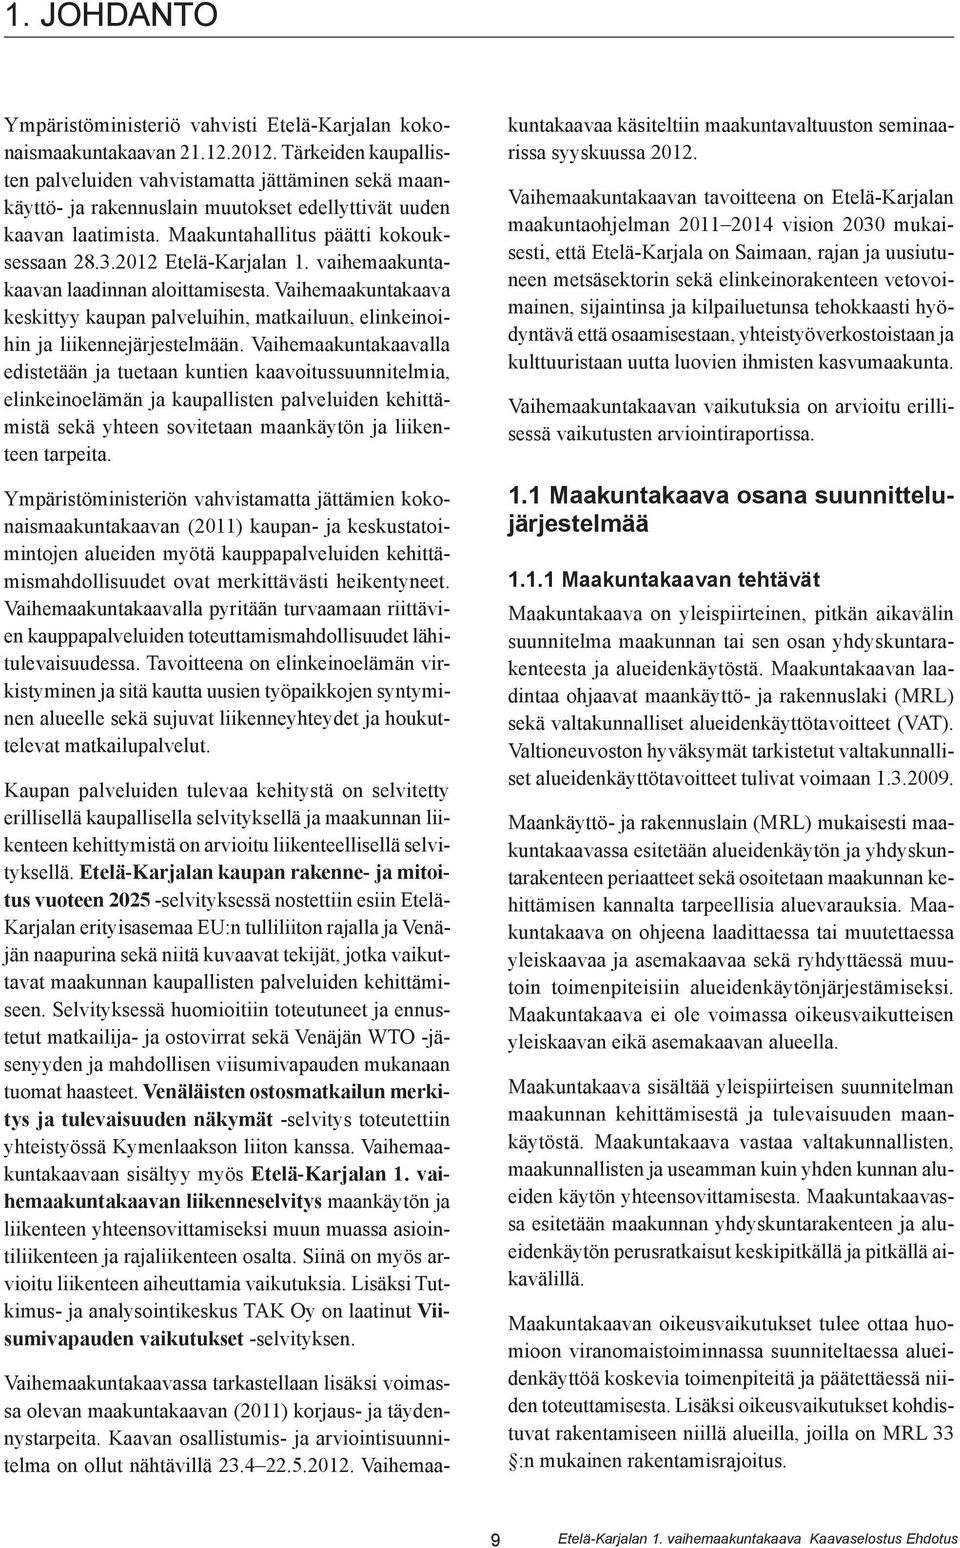 2012 Etelä-Karjalan 1. vaihemaakuntakaavan laadinnan aloittamisesta. Vaihemaakuntakaava keskittyy kaupan palveluihin, matkailuun, elinkeinoihin ja liikennejärjestelmään.